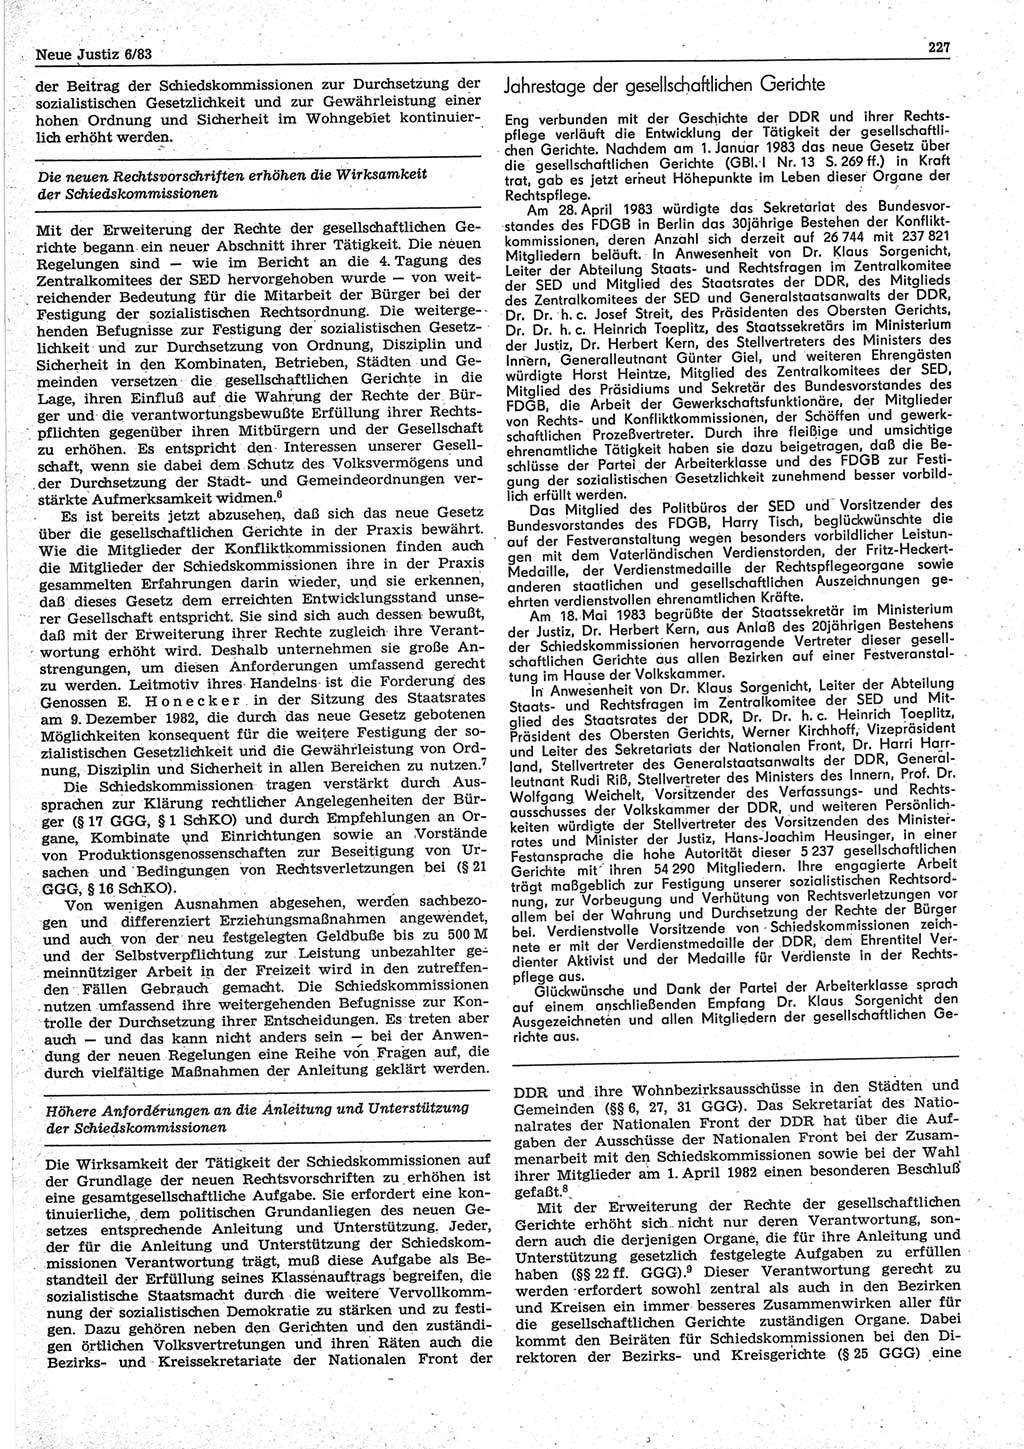 Neue Justiz (NJ), Zeitschrift für sozialistisches Recht und Gesetzlichkeit [Deutsche Demokratische Republik (DDR)], 37. Jahrgang 1983, Seite 227 (NJ DDR 1983, S. 227)